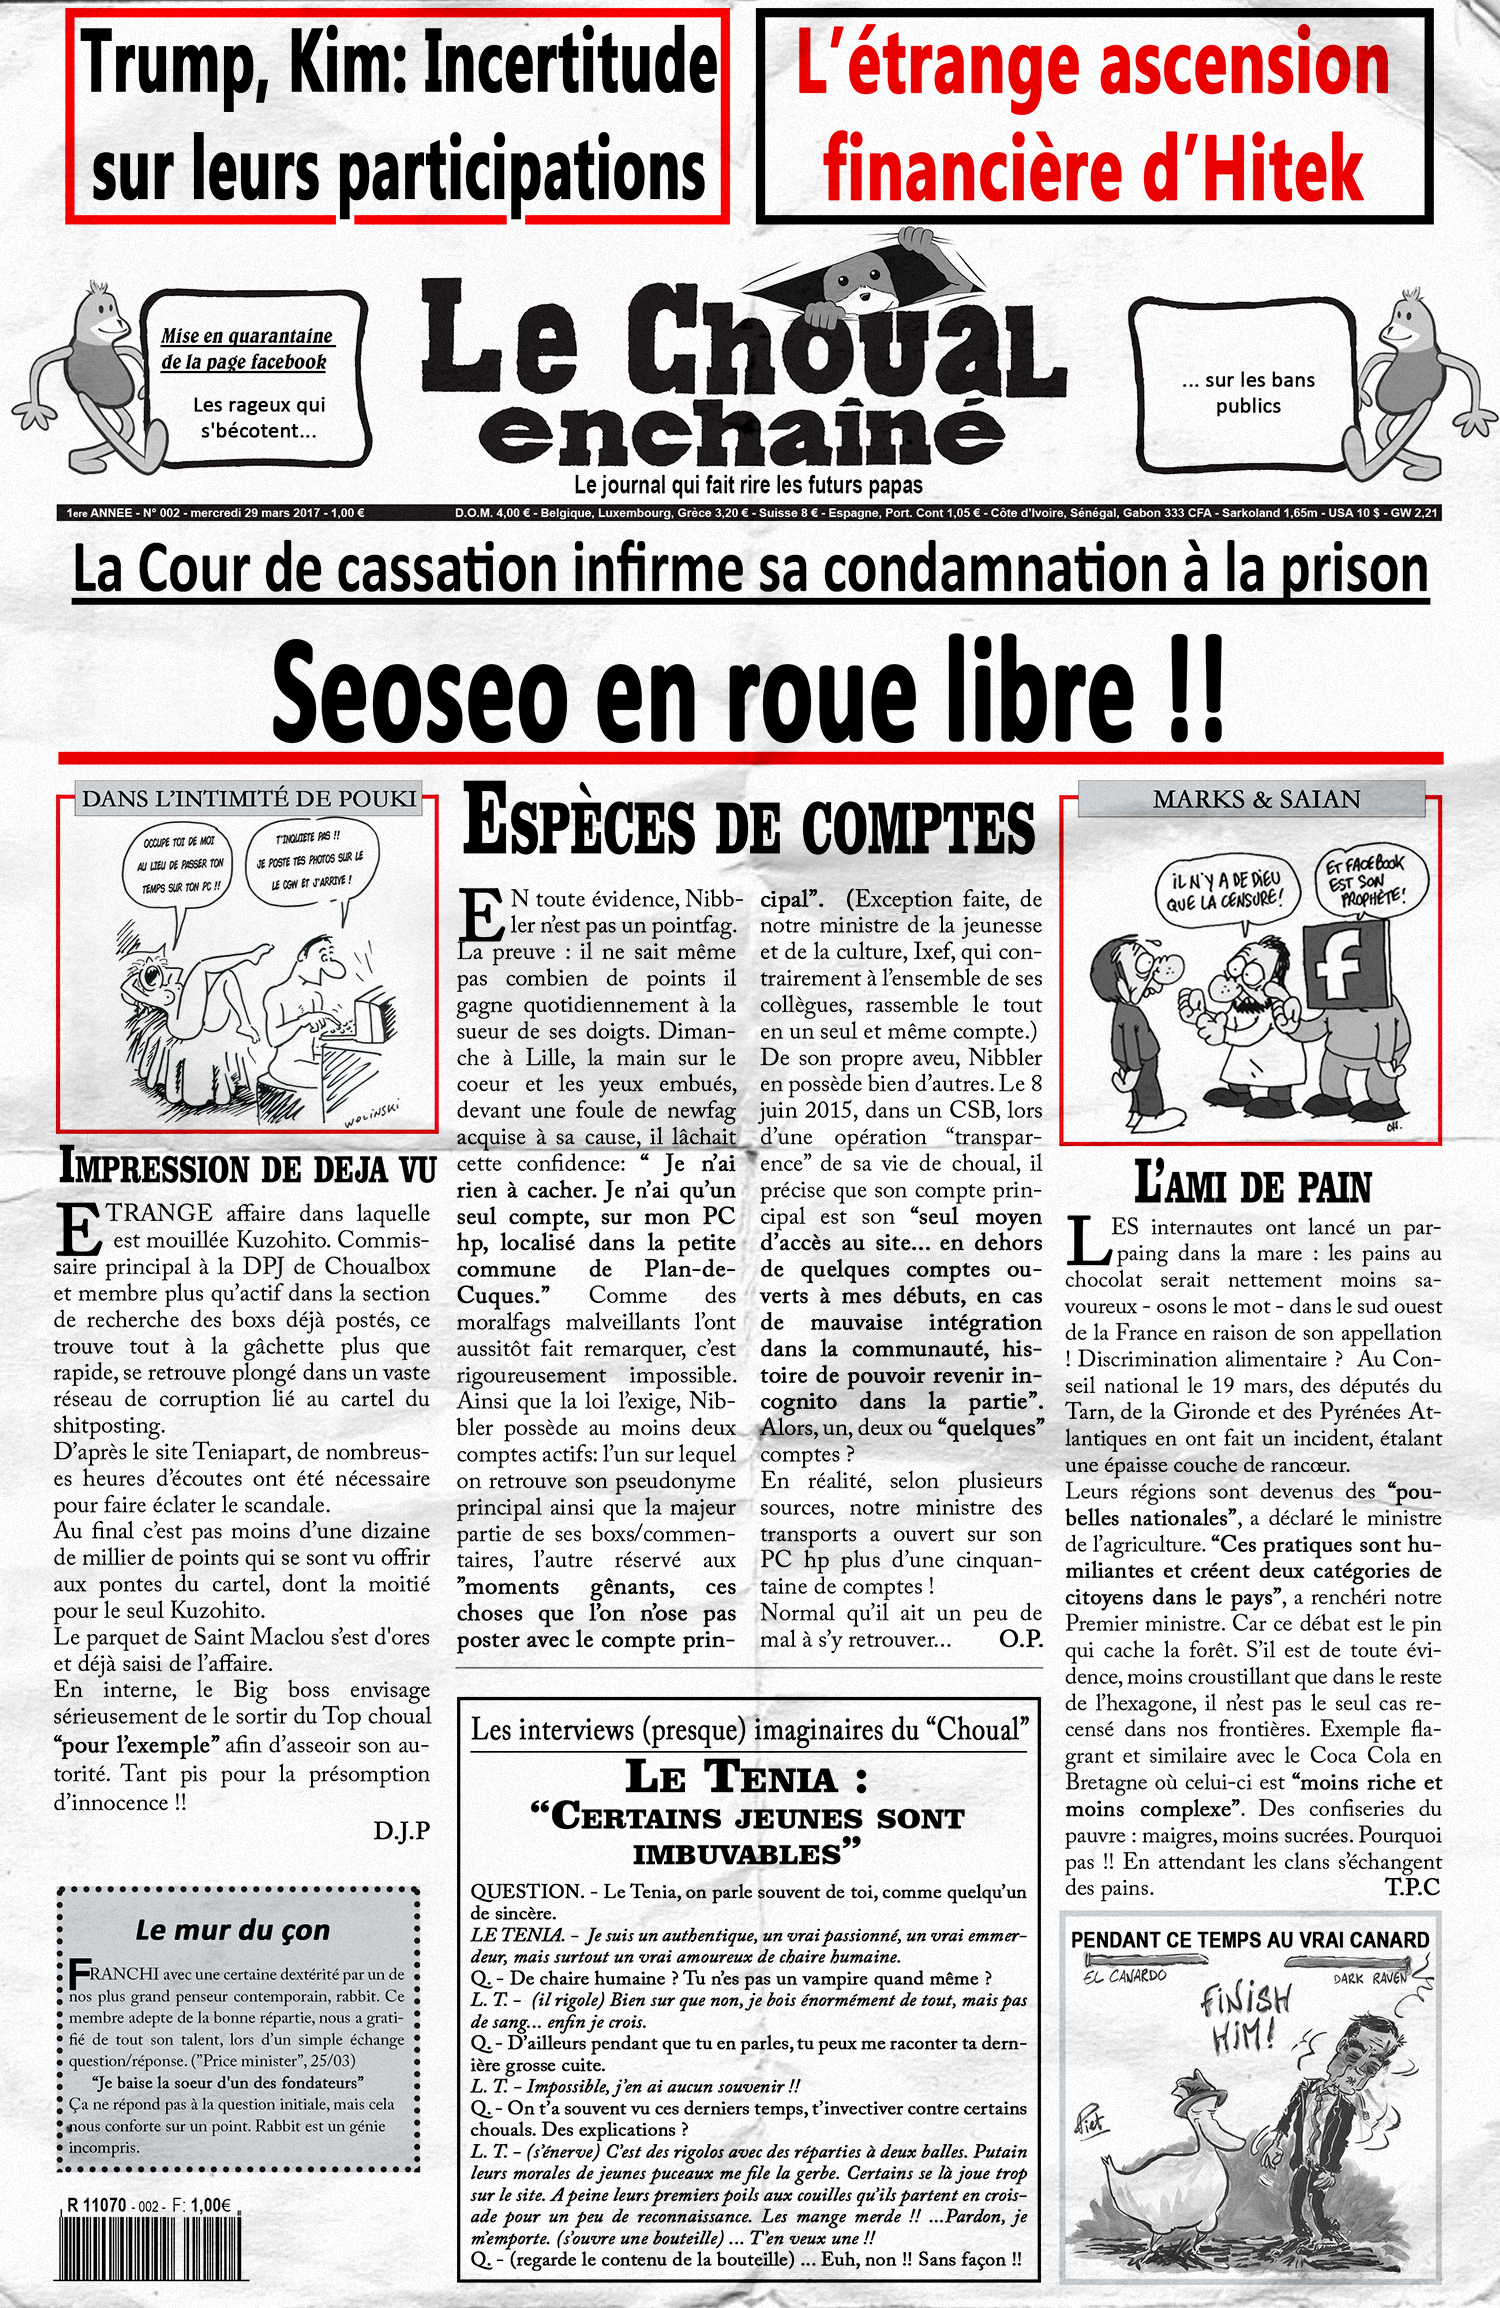 Le Choual Enchainé #2